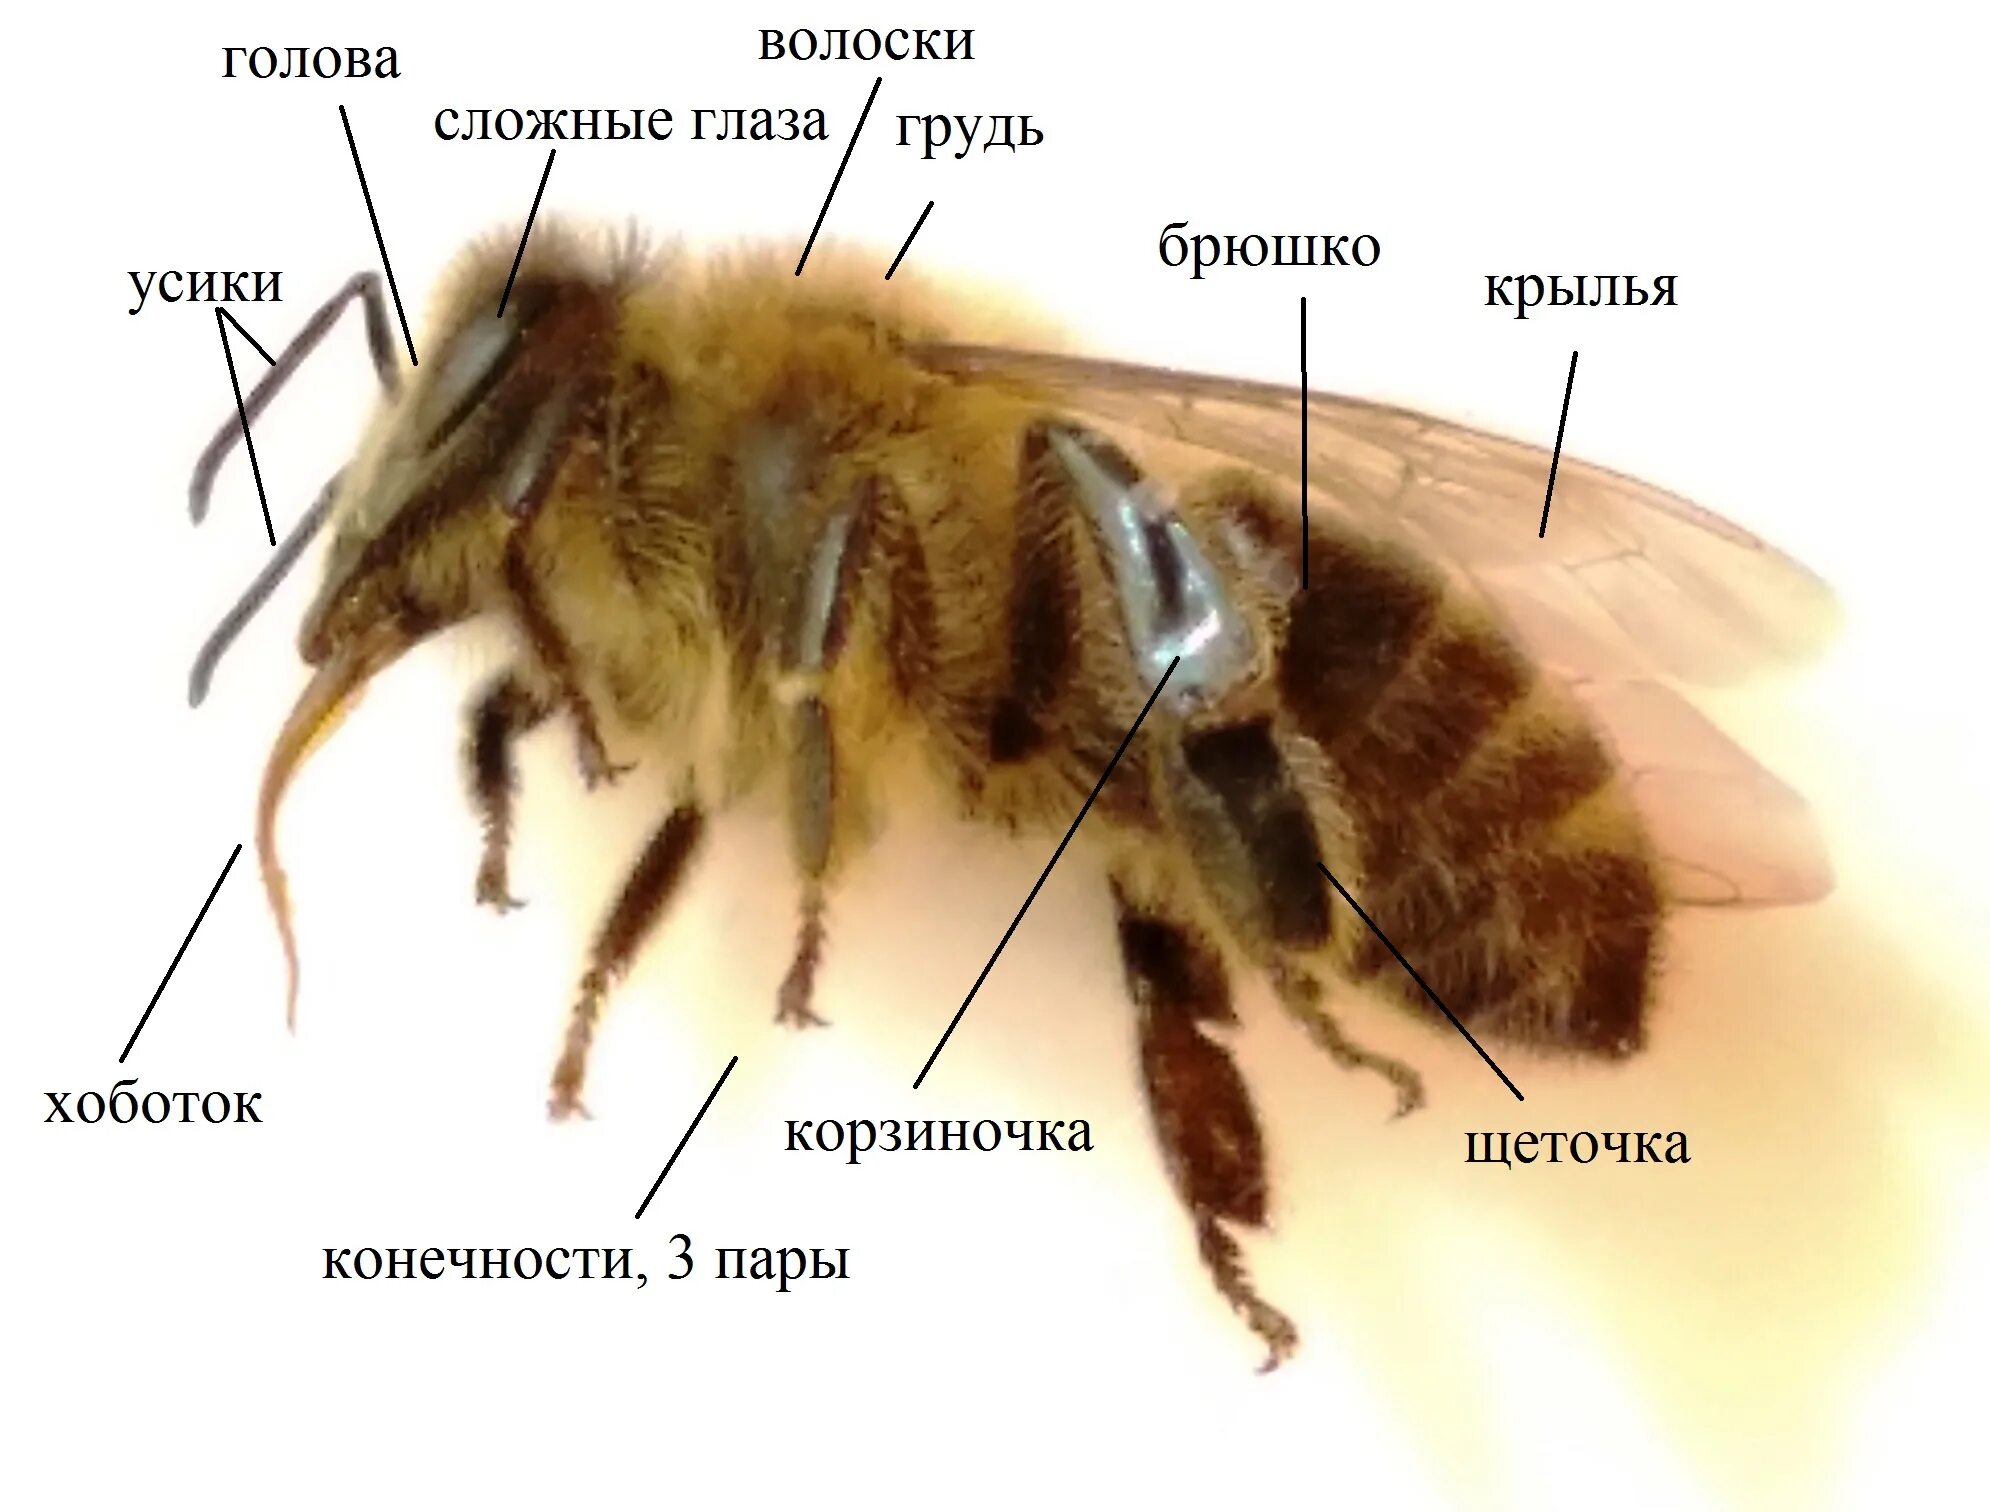 Отделы тела пчелы медоносной. Анатомия пчелы медоносной. Строение пчелы медоносной. Внешнее строение пчелы. Строение тела пчелы медоносной.